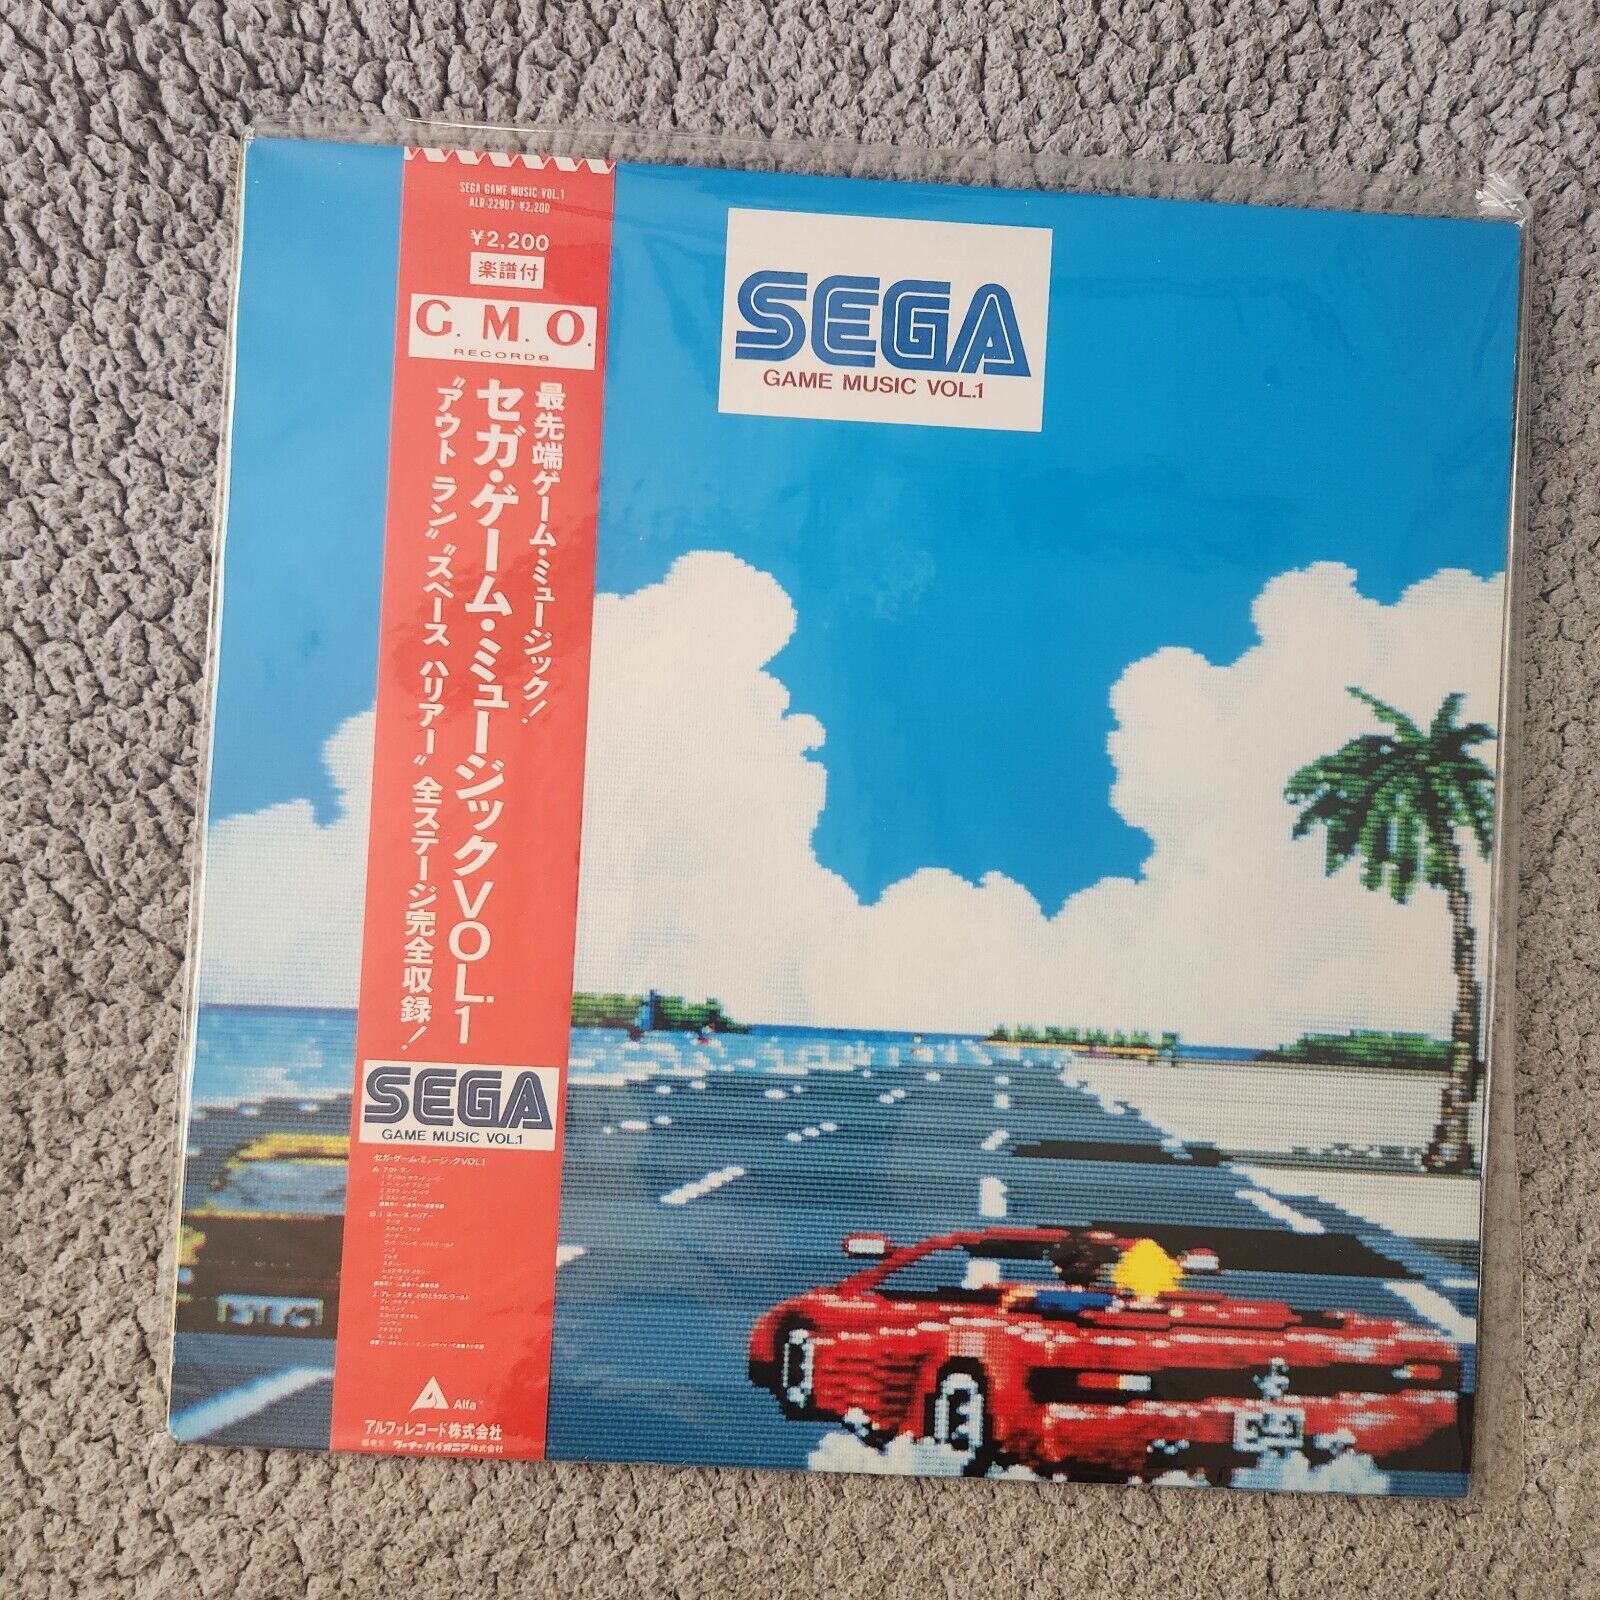 G.M.O. Outrun Sega Game Music Vol. 1 Alfa Records 1986 AM2 Vinyl LP ALR-22907